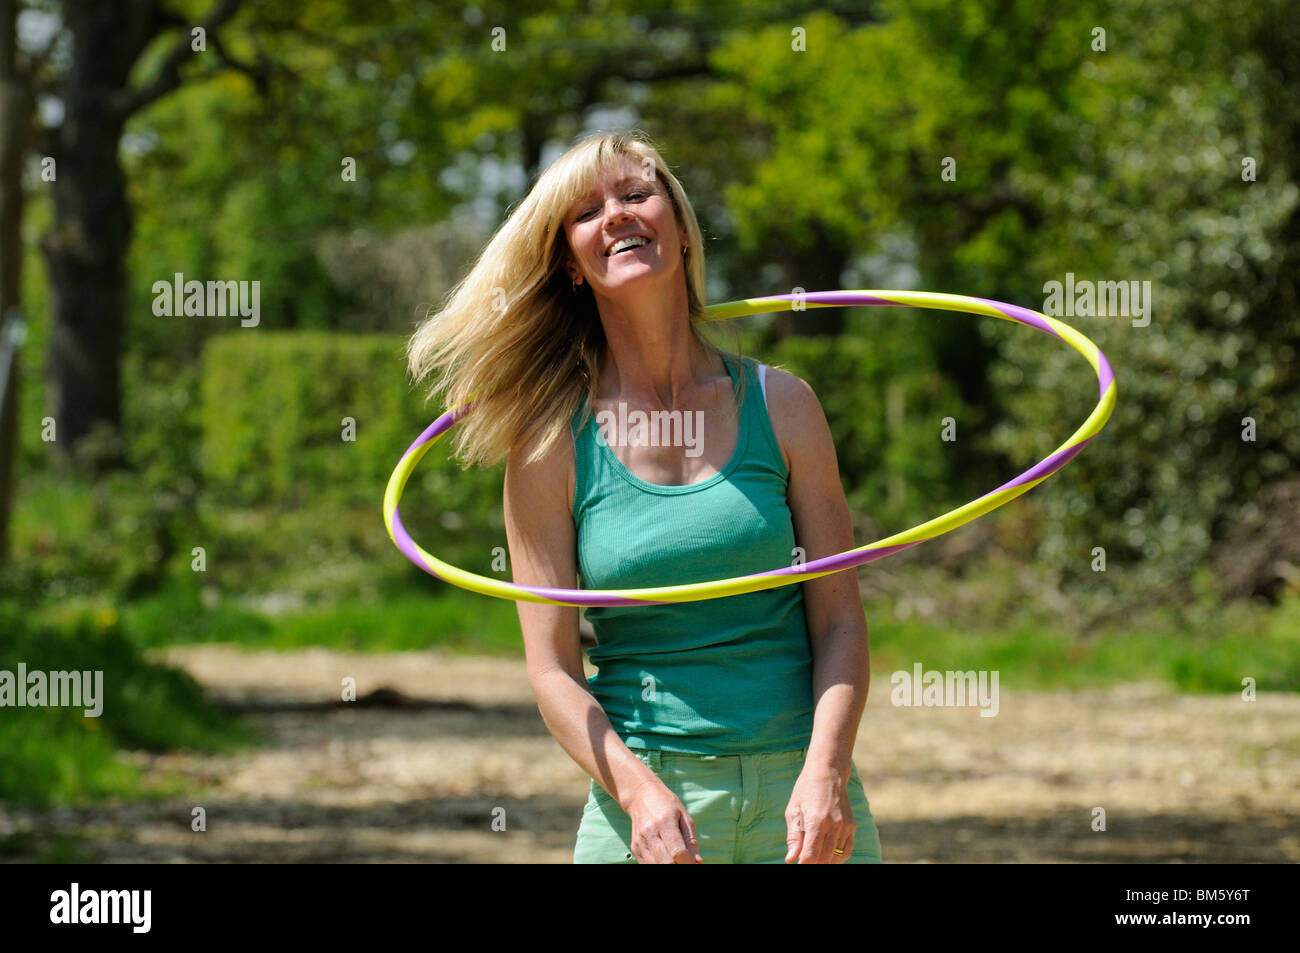 Frau mit einen Hula-Hoop-Reifen um ihren Hals-Muskeln trainieren  Stockfotografie - Alamy